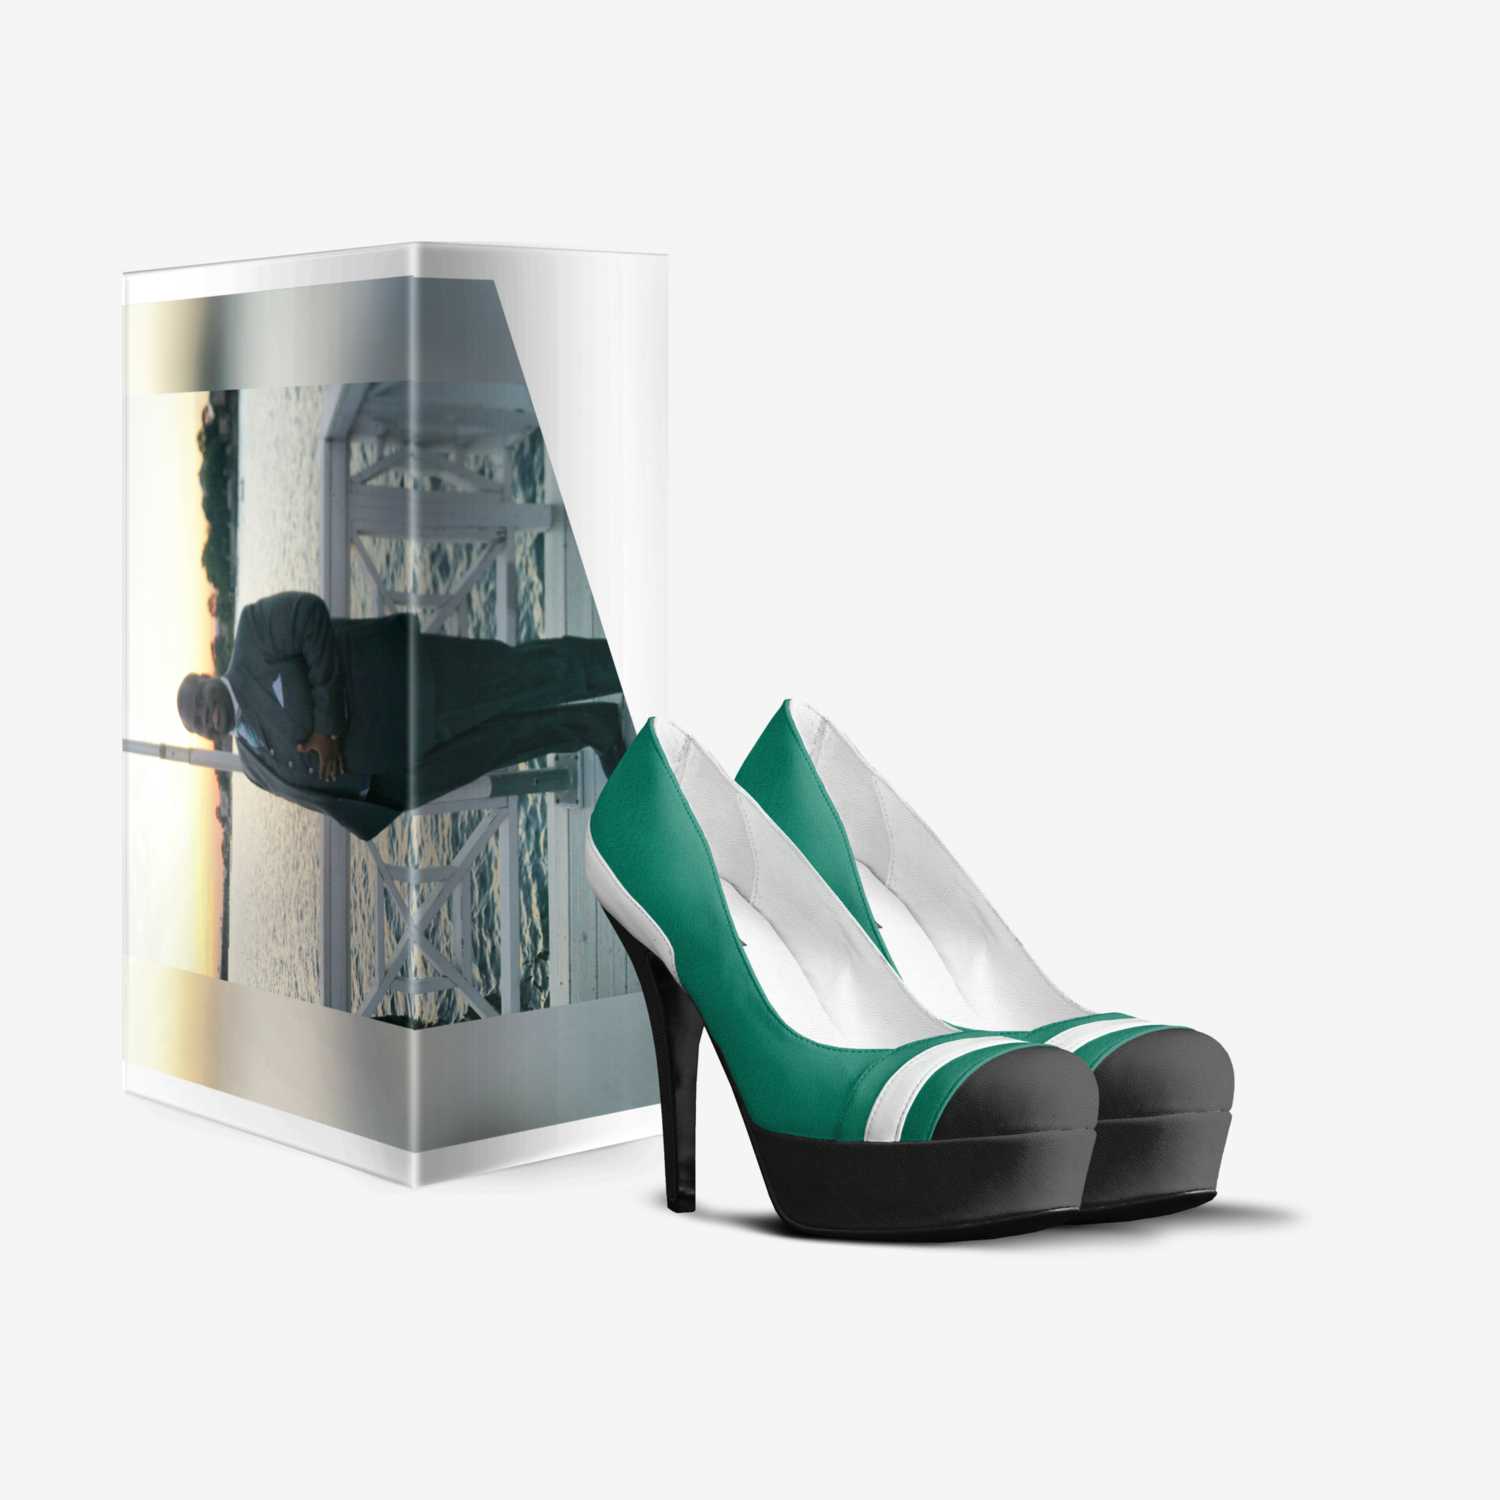 Murphnetti PH custom made in Italy shoes by Tyriek Murphy | Box view